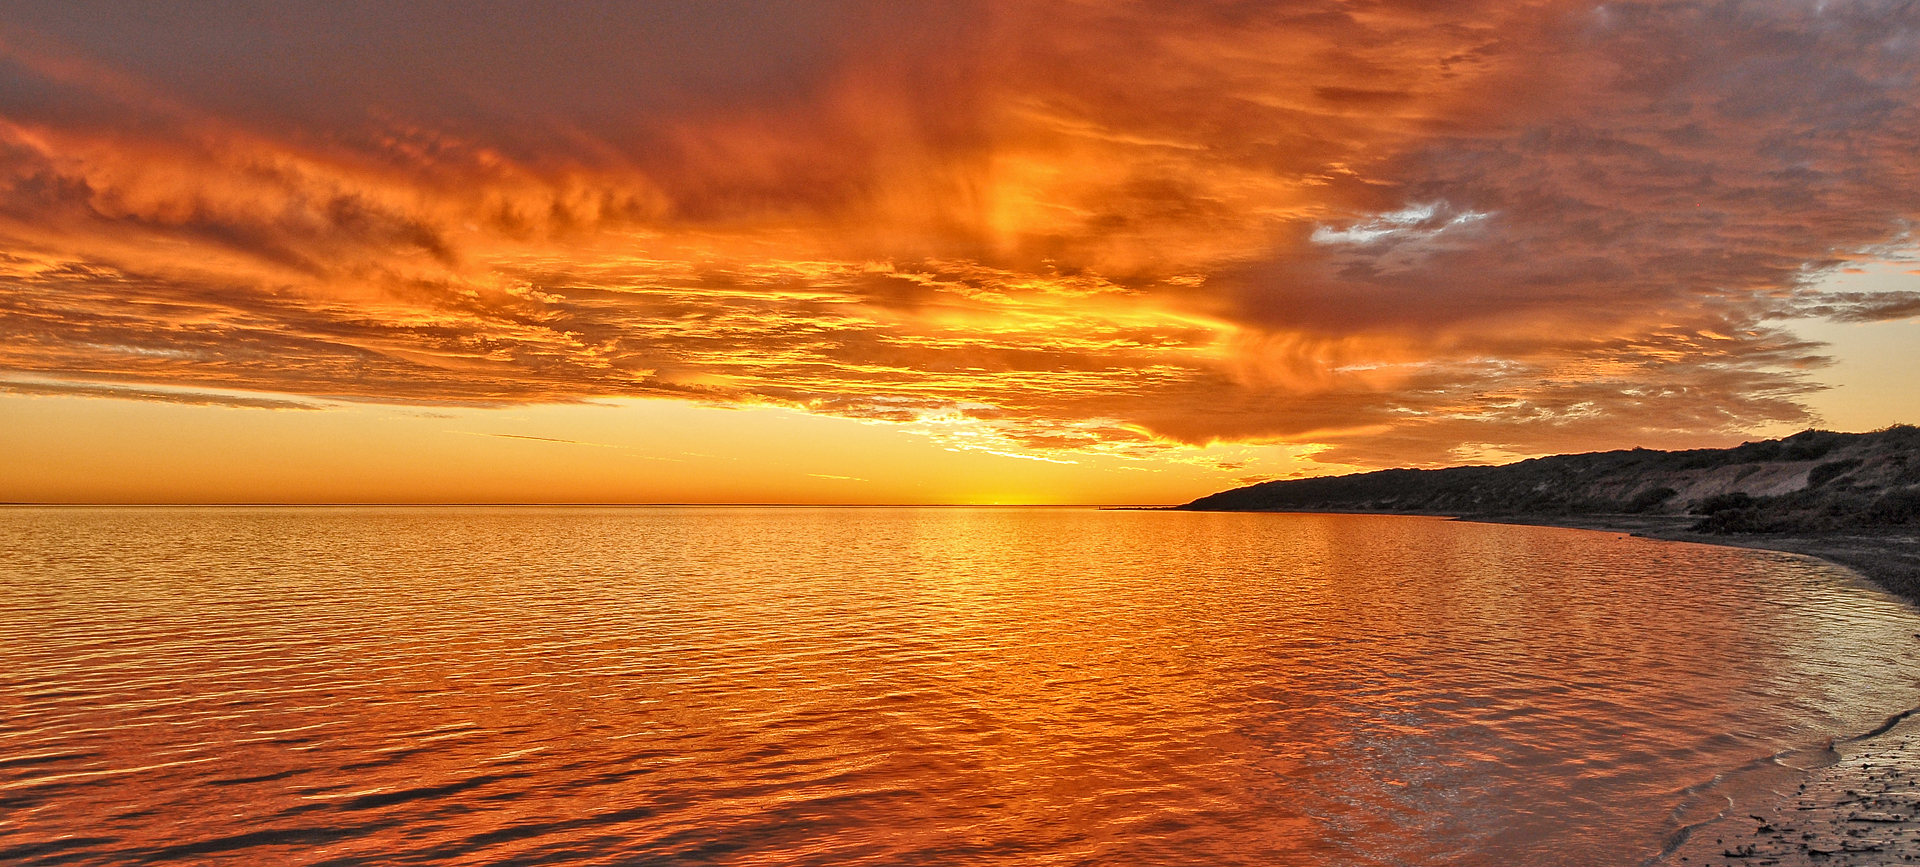 Shark Bay sunset